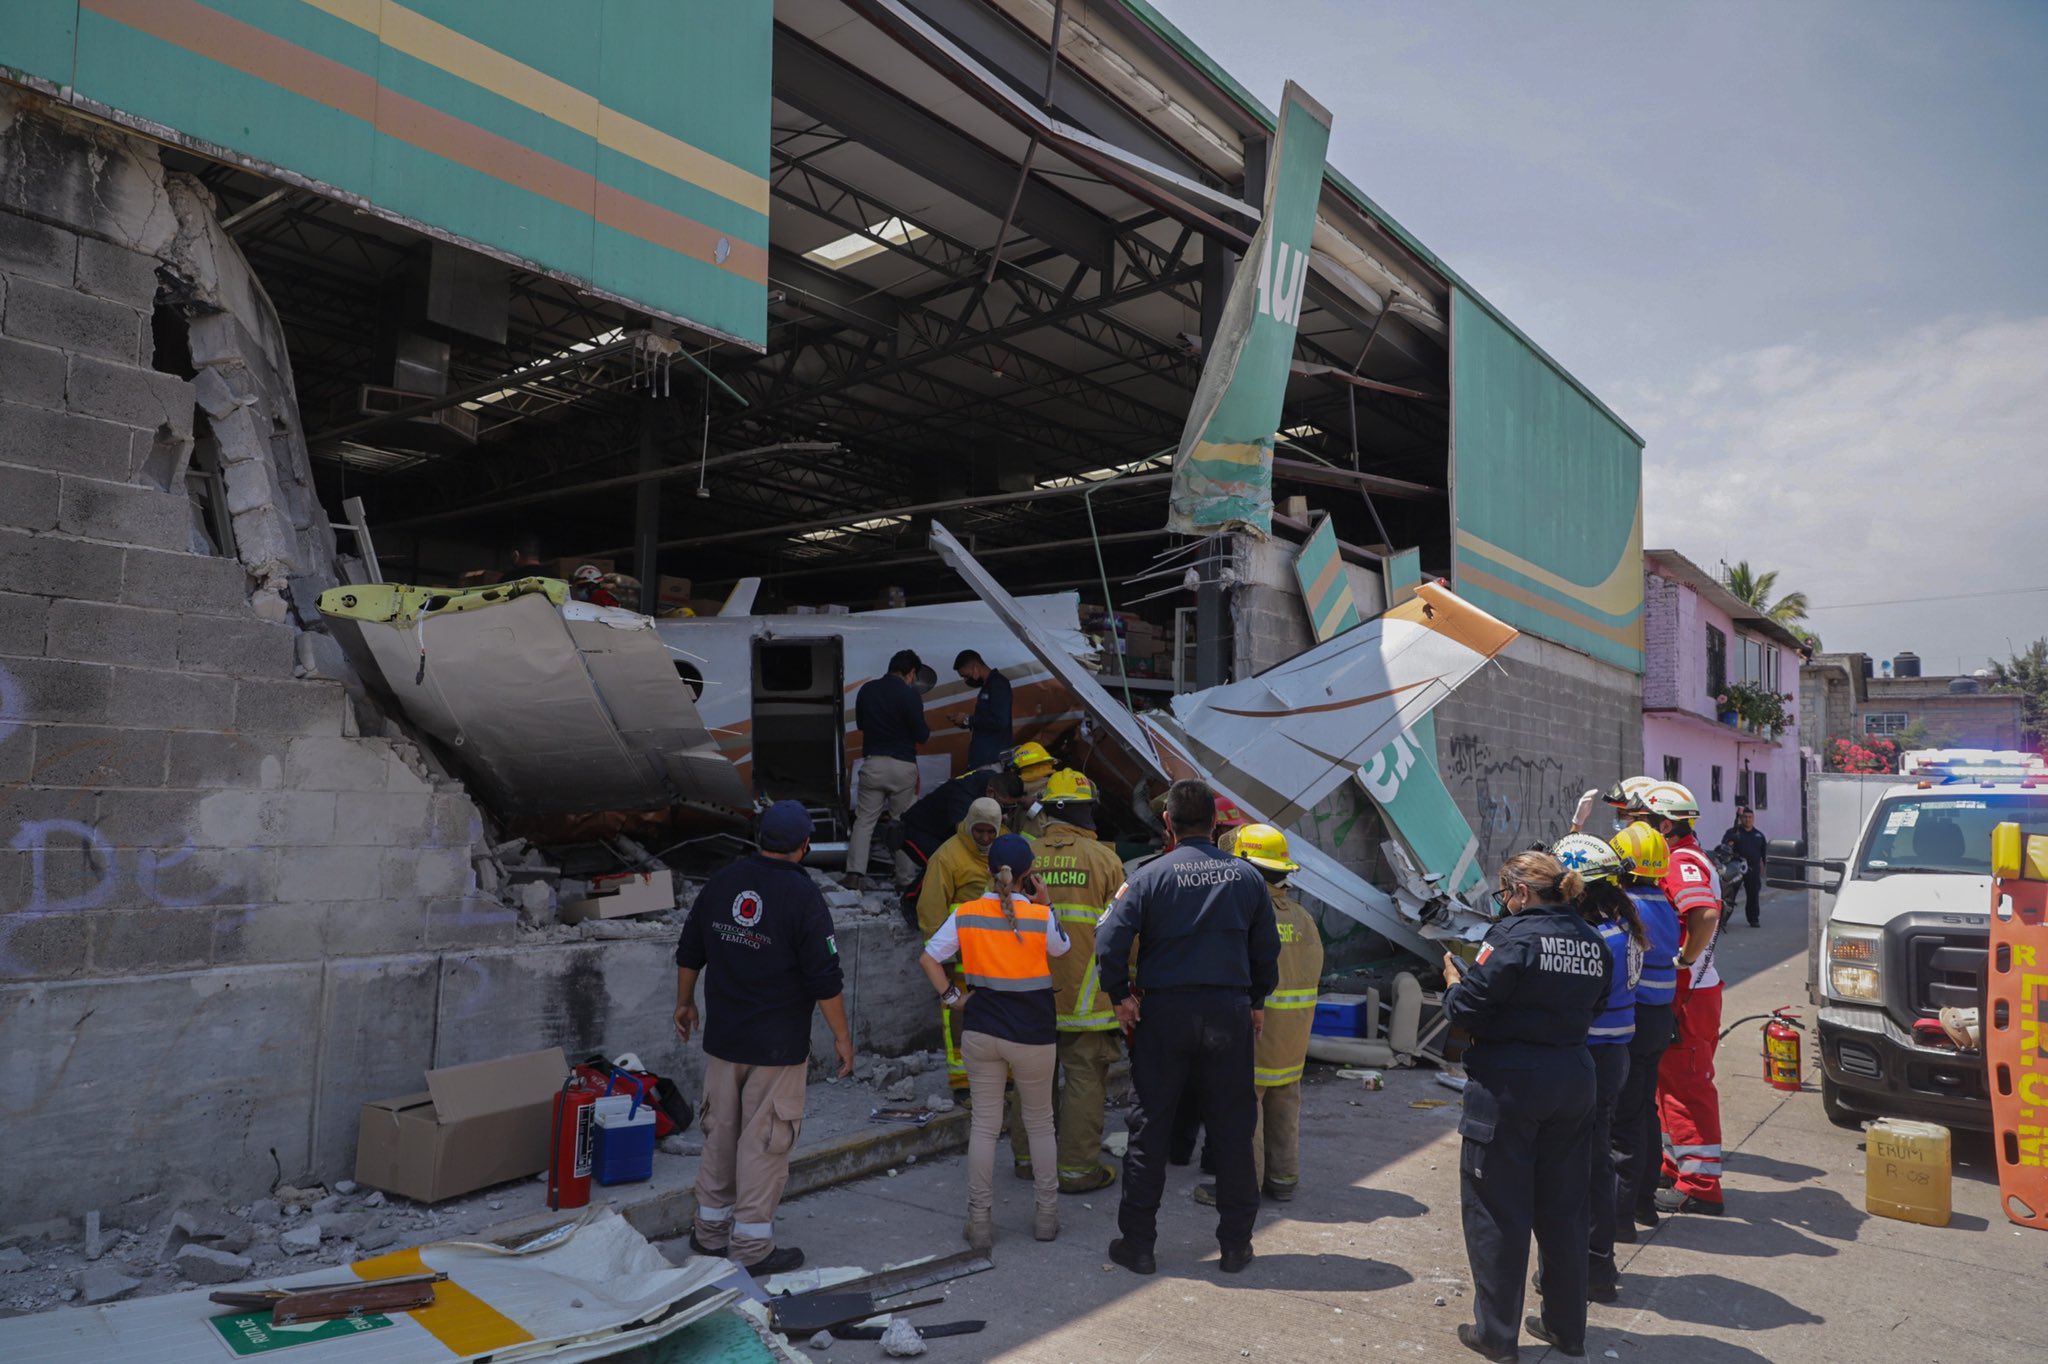 los reportes señalan que los tres pasajeros de la aeronave fallecireron, y que los heridos no son de gravedad.